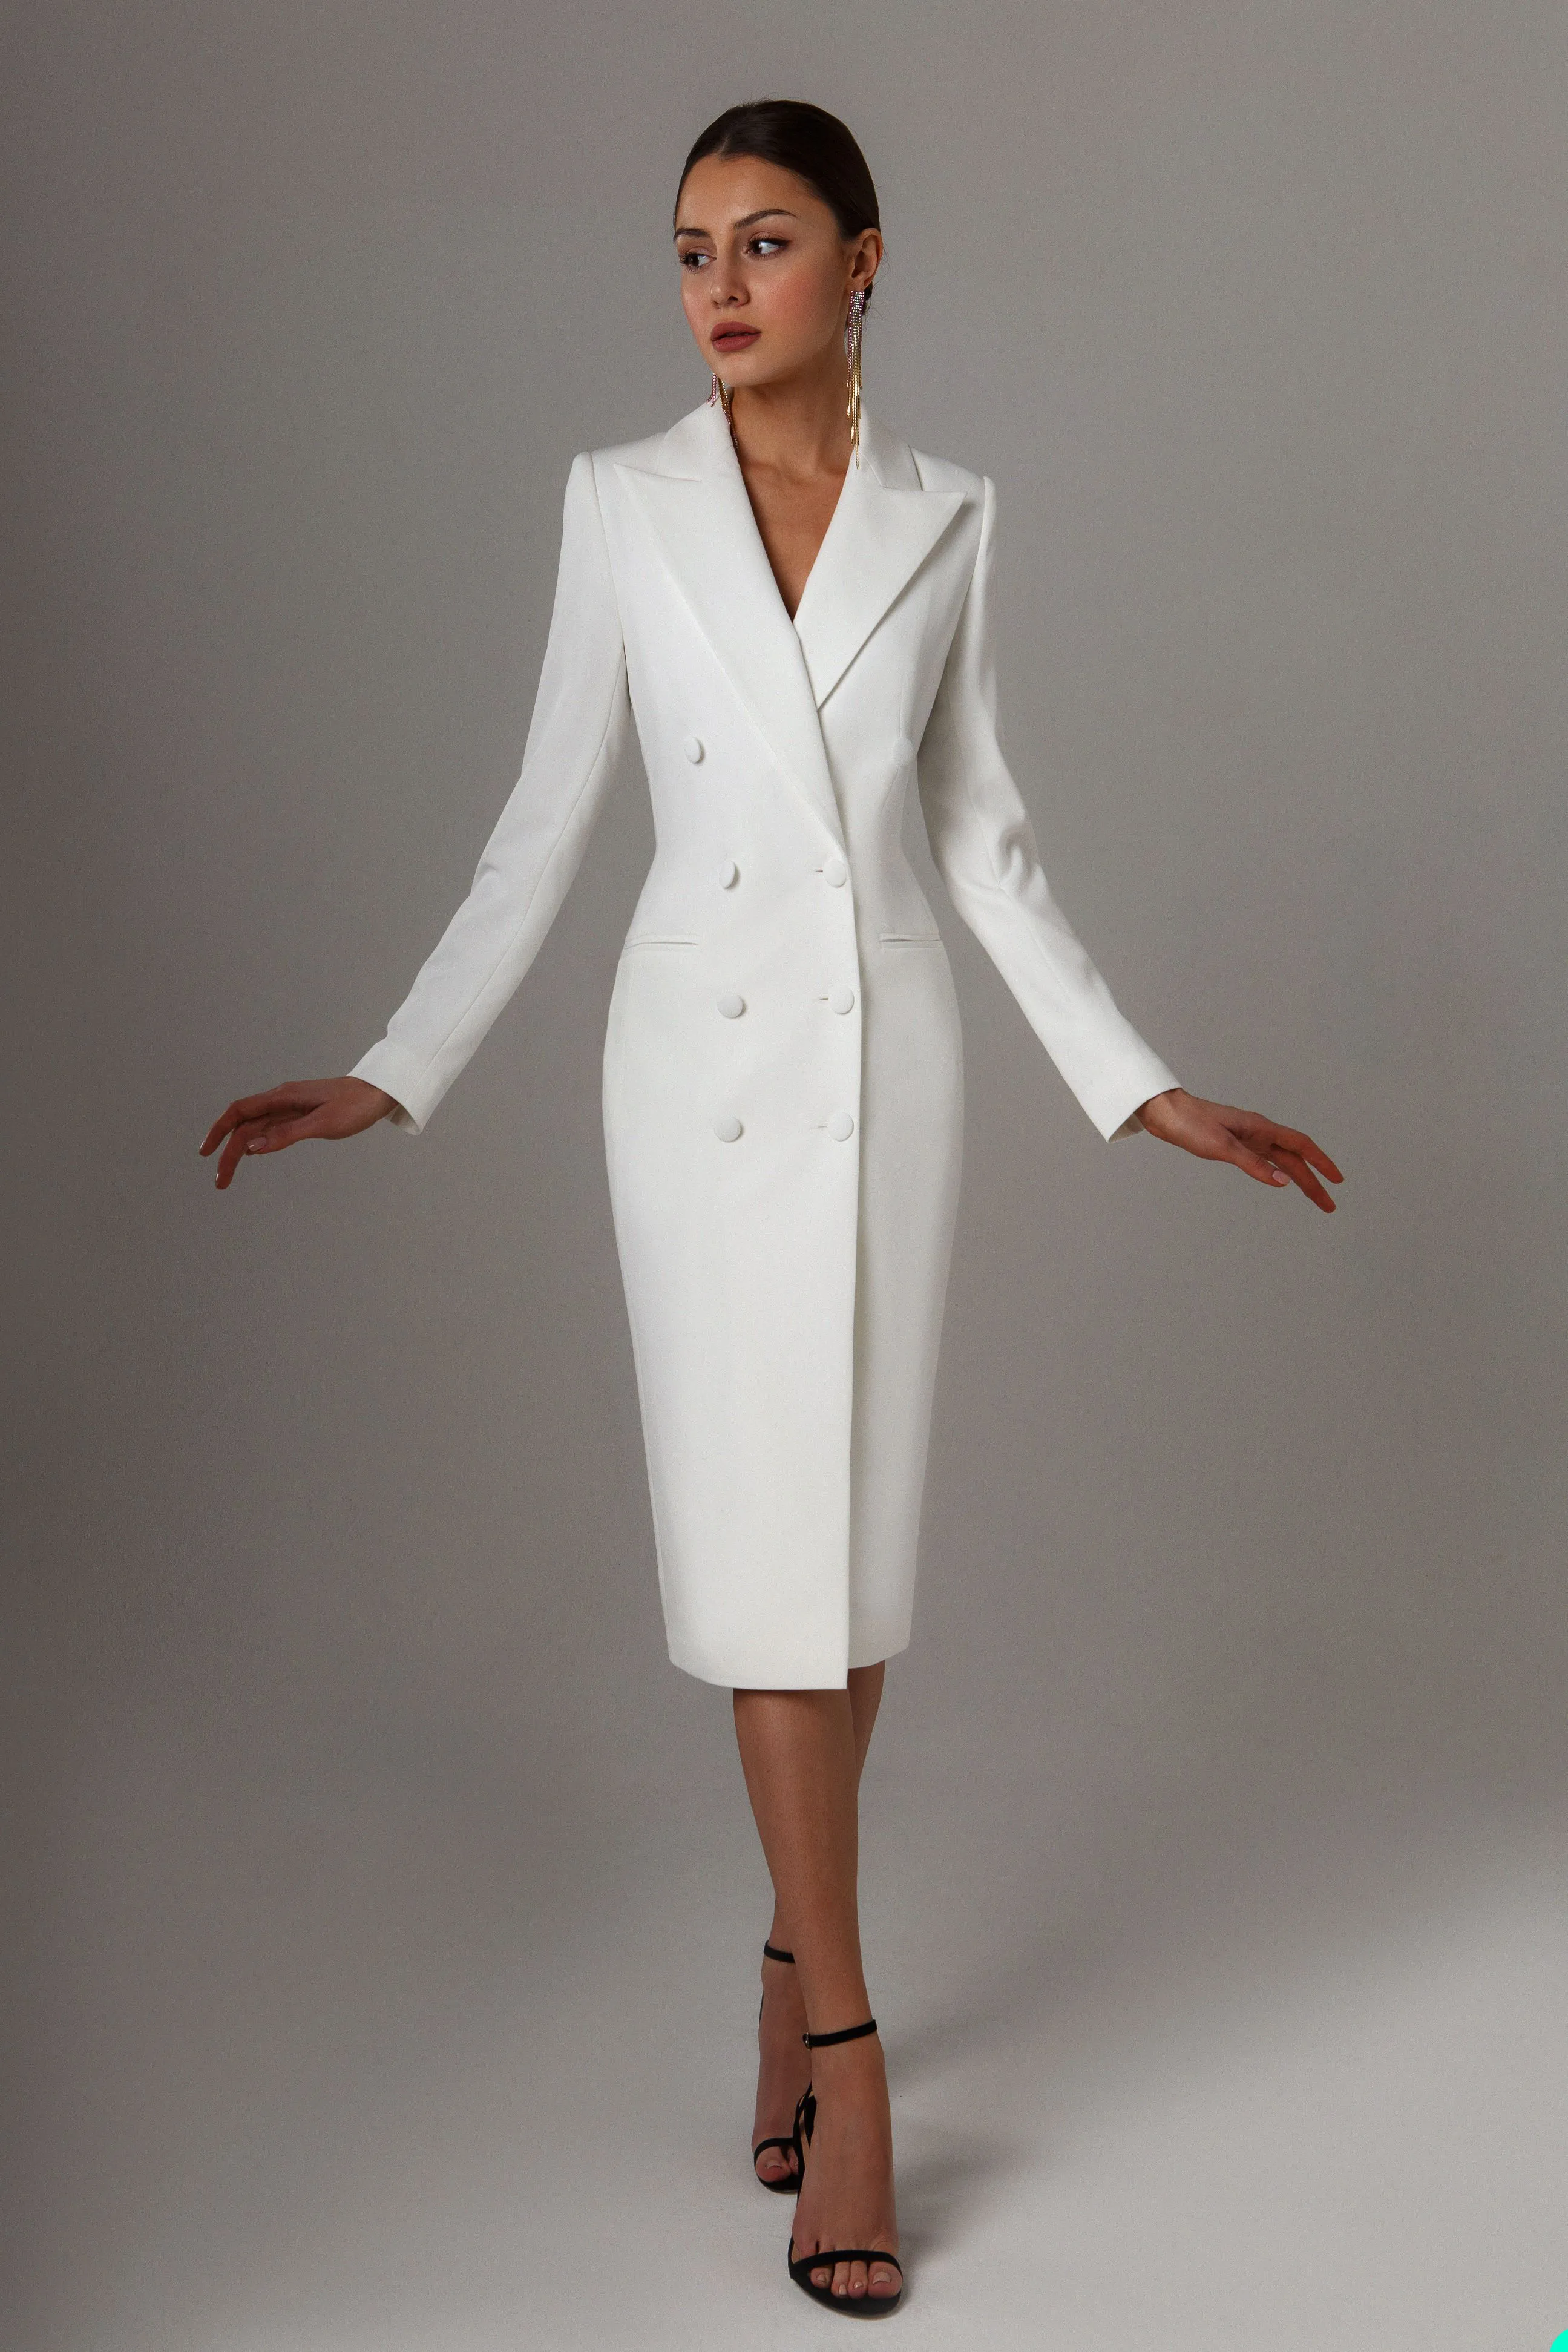 Sonbahar Beyaz Çifte Göğüslü Kadın Kıyafet Uzun Ceket Takımları Bayanlar Prom Akşam Konuk Giyim Özel Yapımı